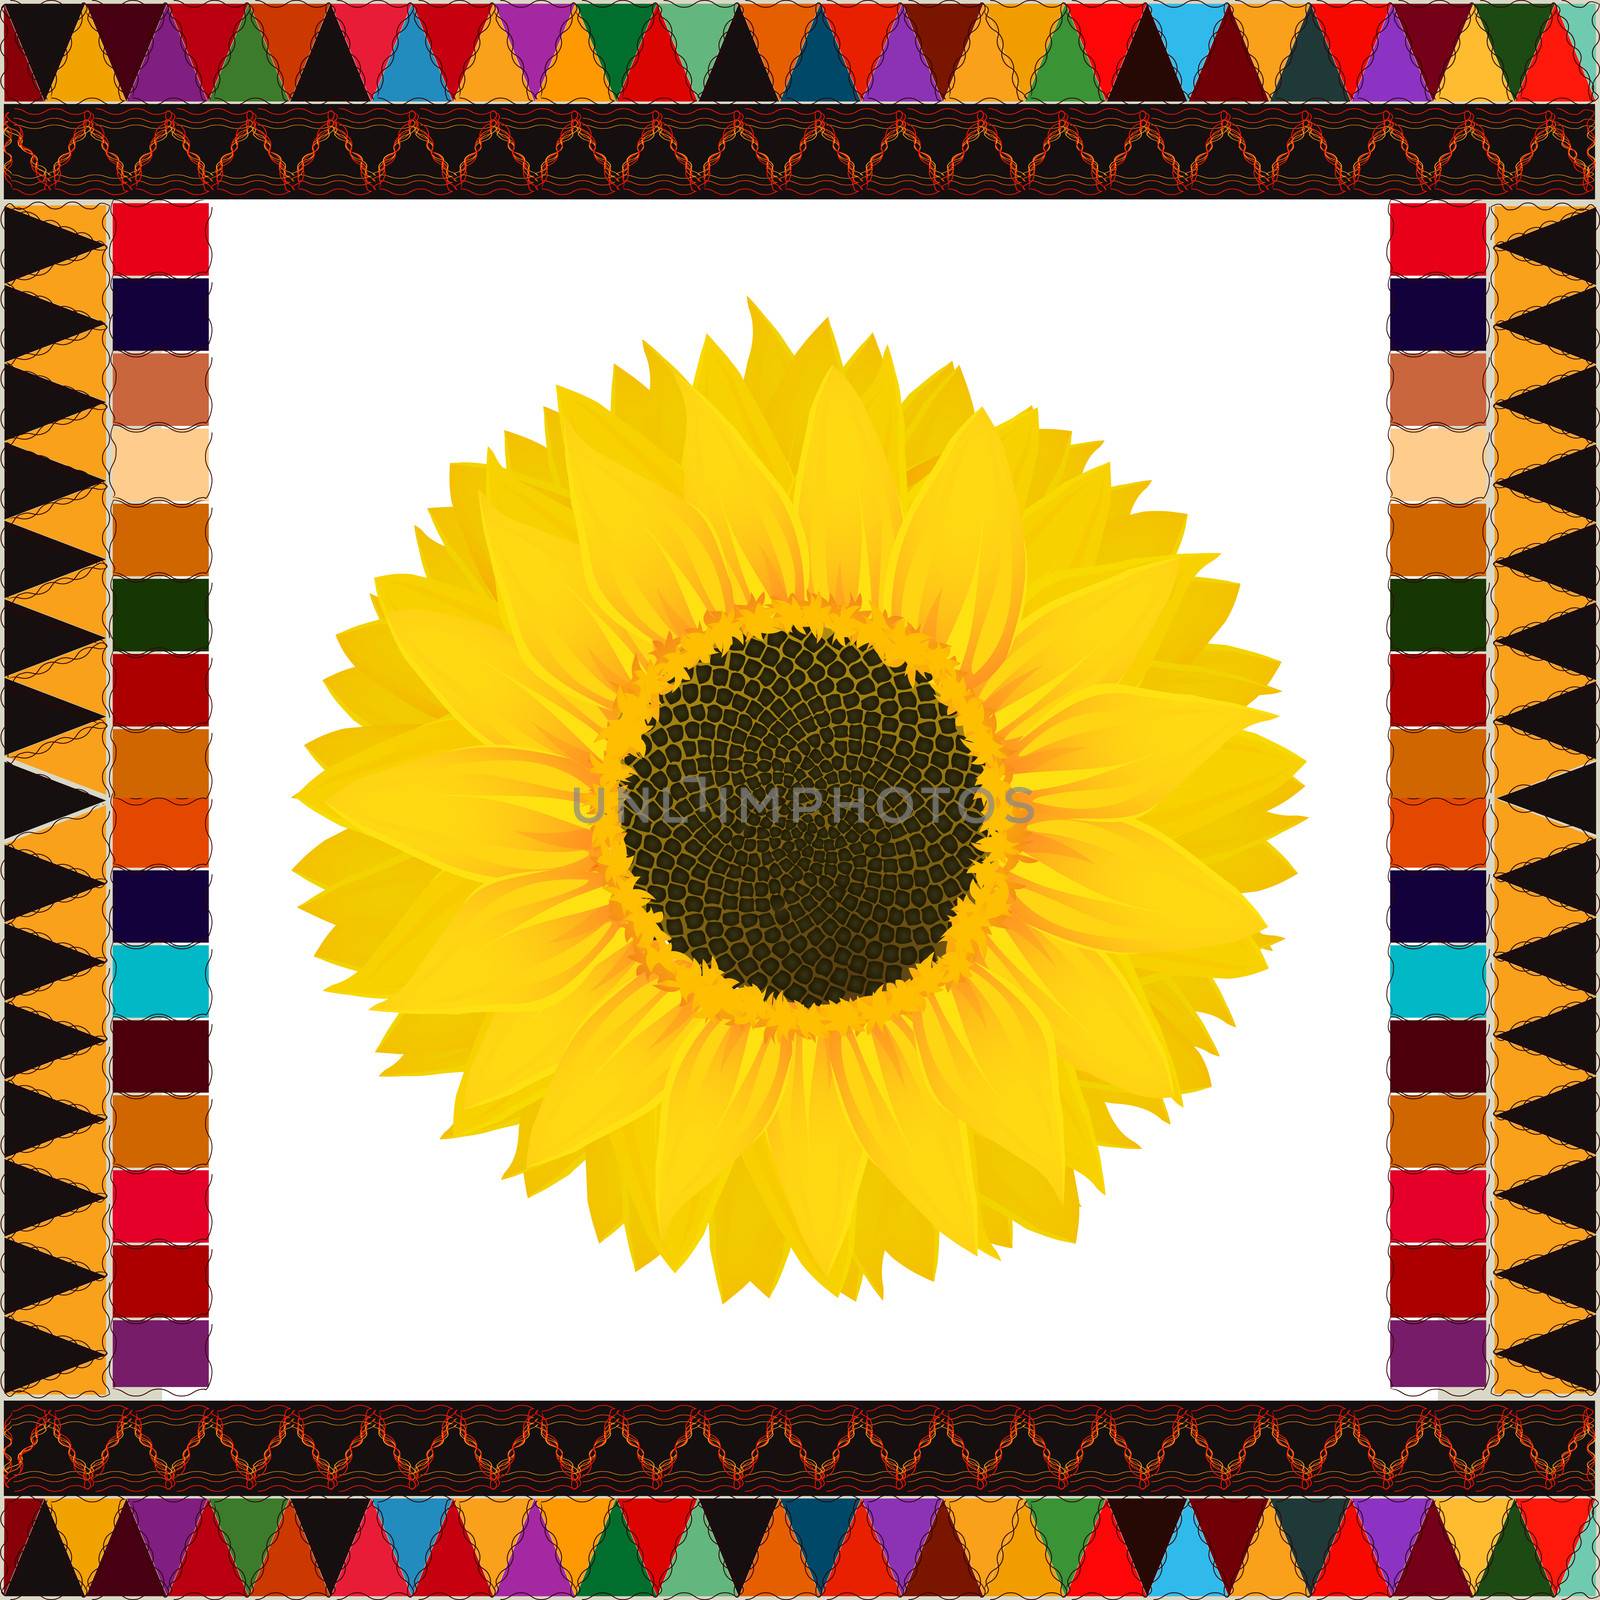 Autumn sunflower background by Lirch